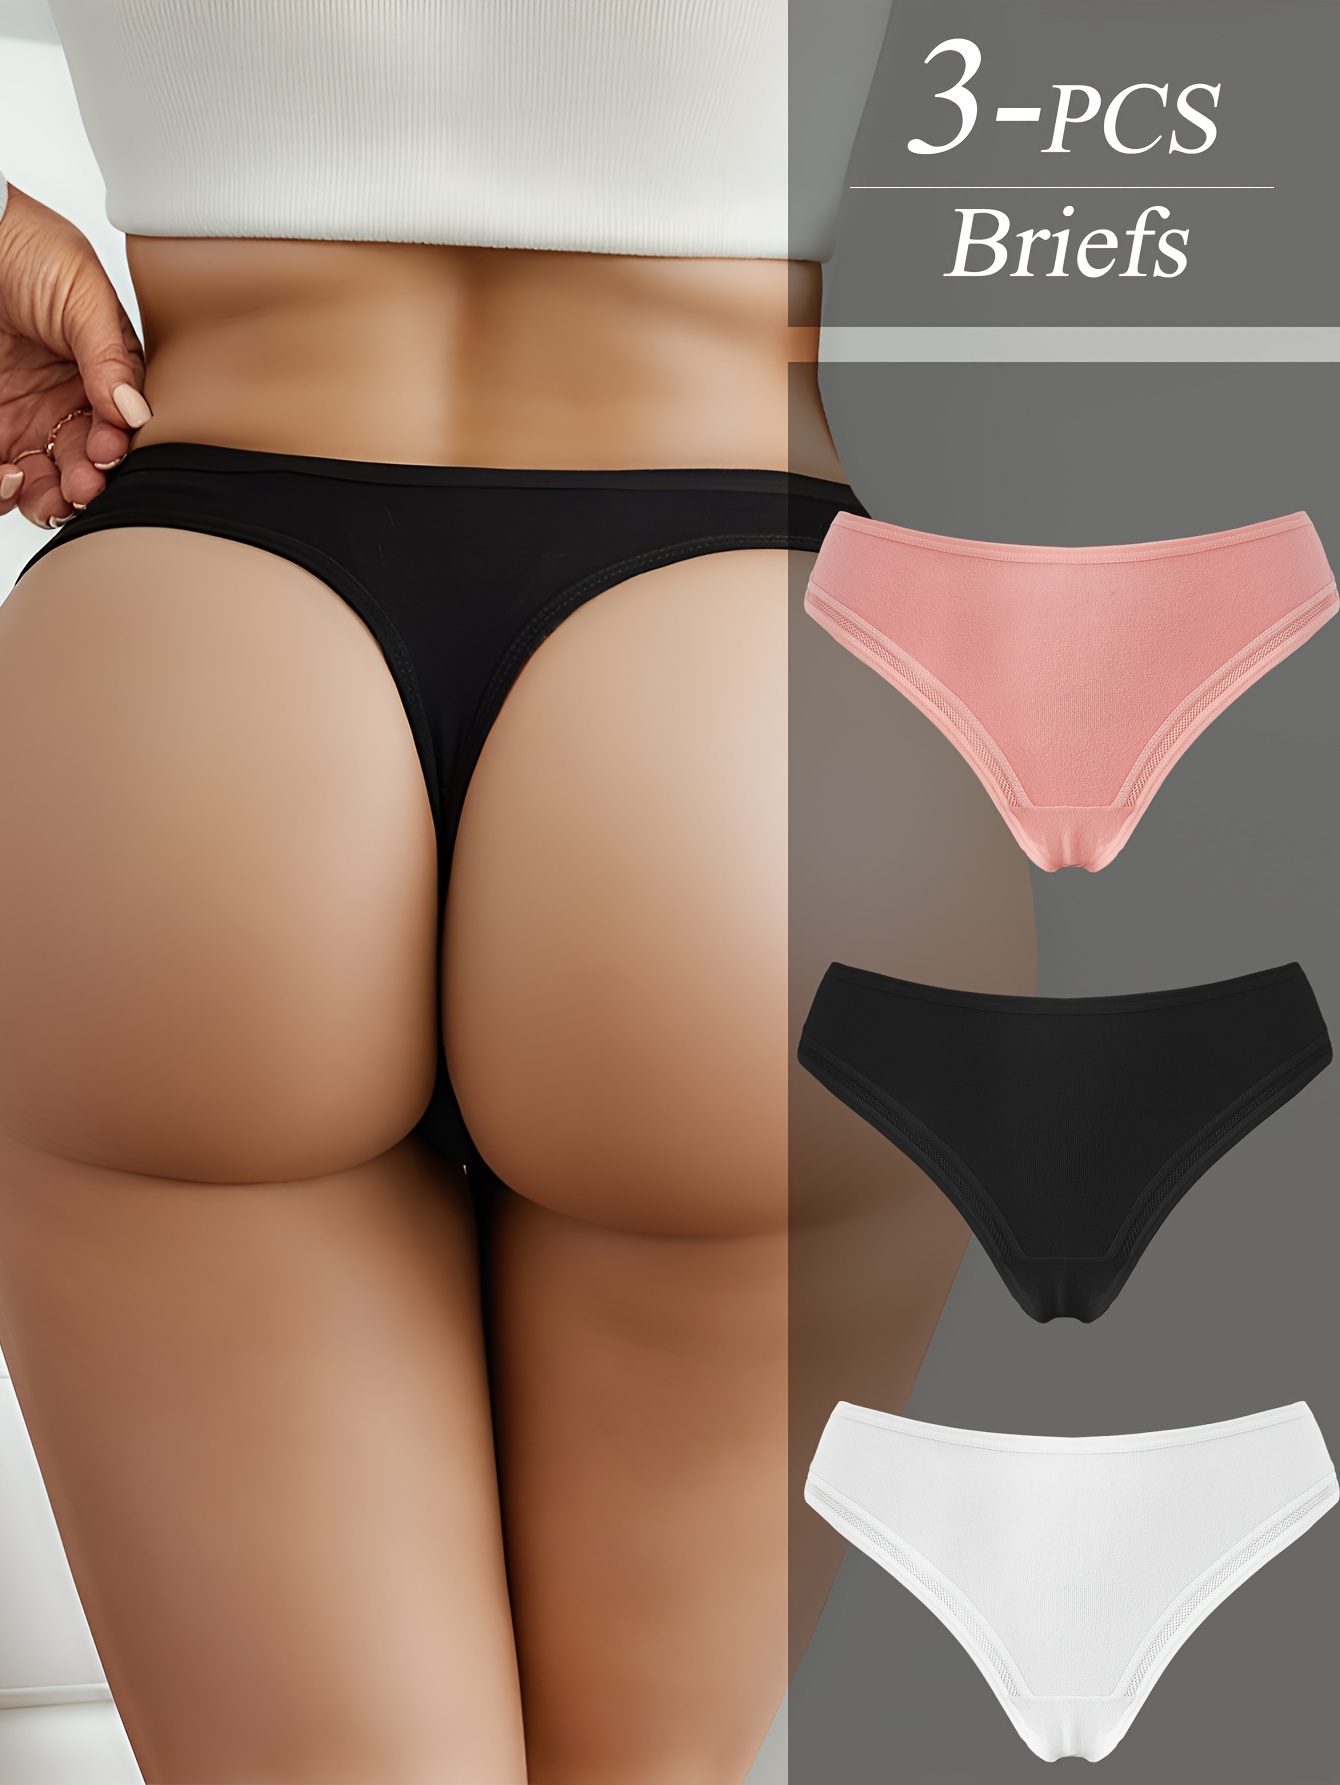 1/3PCS Women Panties Briefs Underwear Lingerie Knicker Thongs G